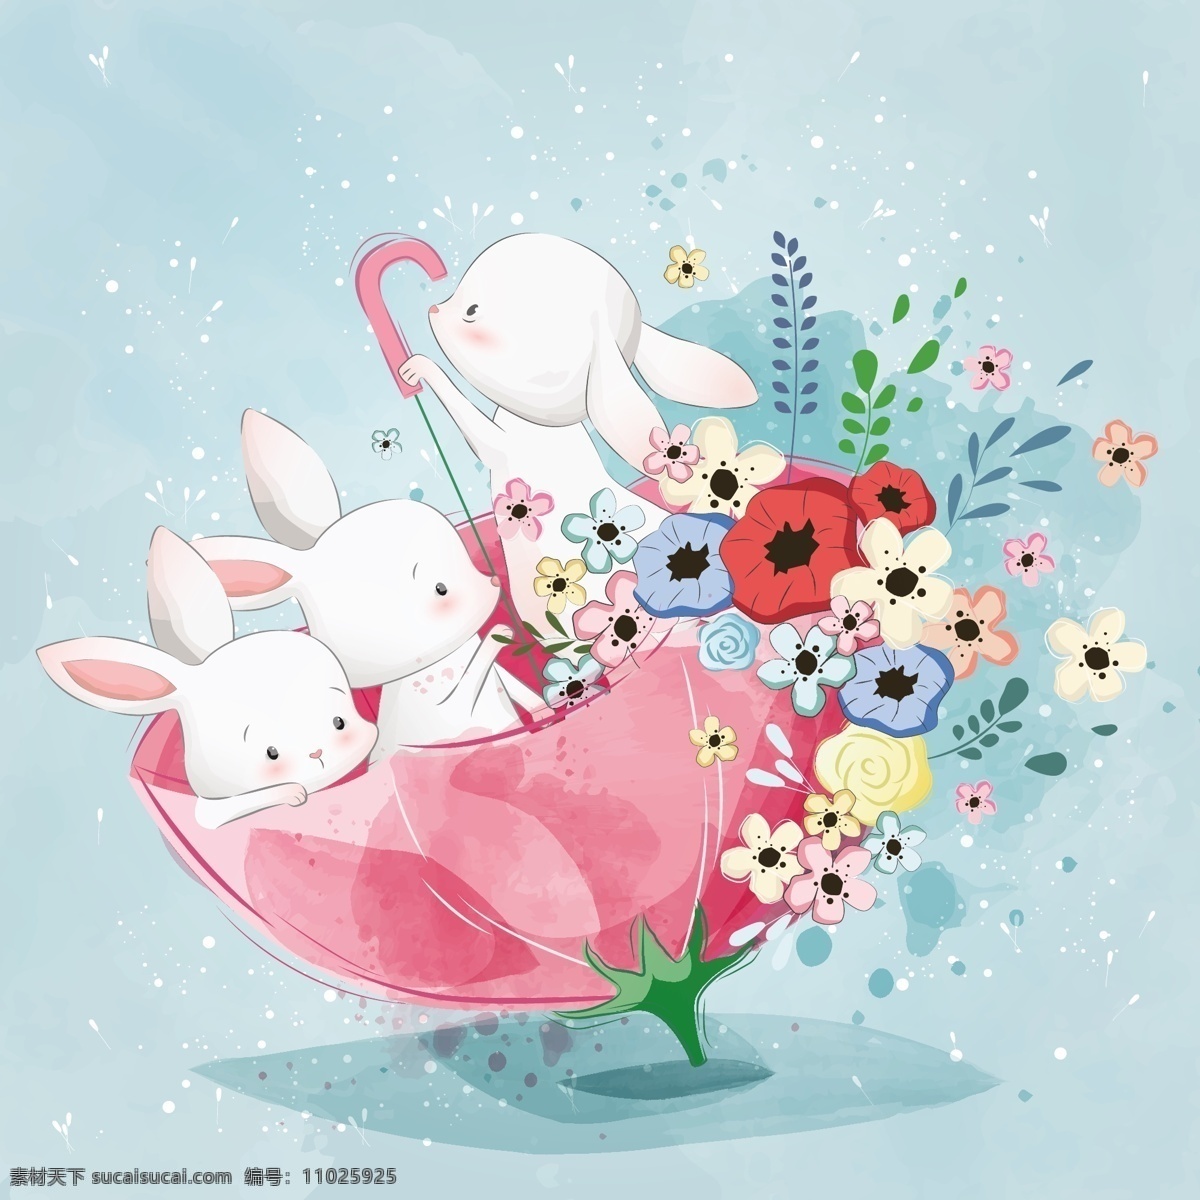 坐在 红色 伞 里 小 兔子 手绘可爱小兔 治愈系小兔子 可爱小兔子 手绘花束 手绘水壶 卡通兔子 粉色小兔子 小兔子 手绘兔子 卡通动漫 动漫动画